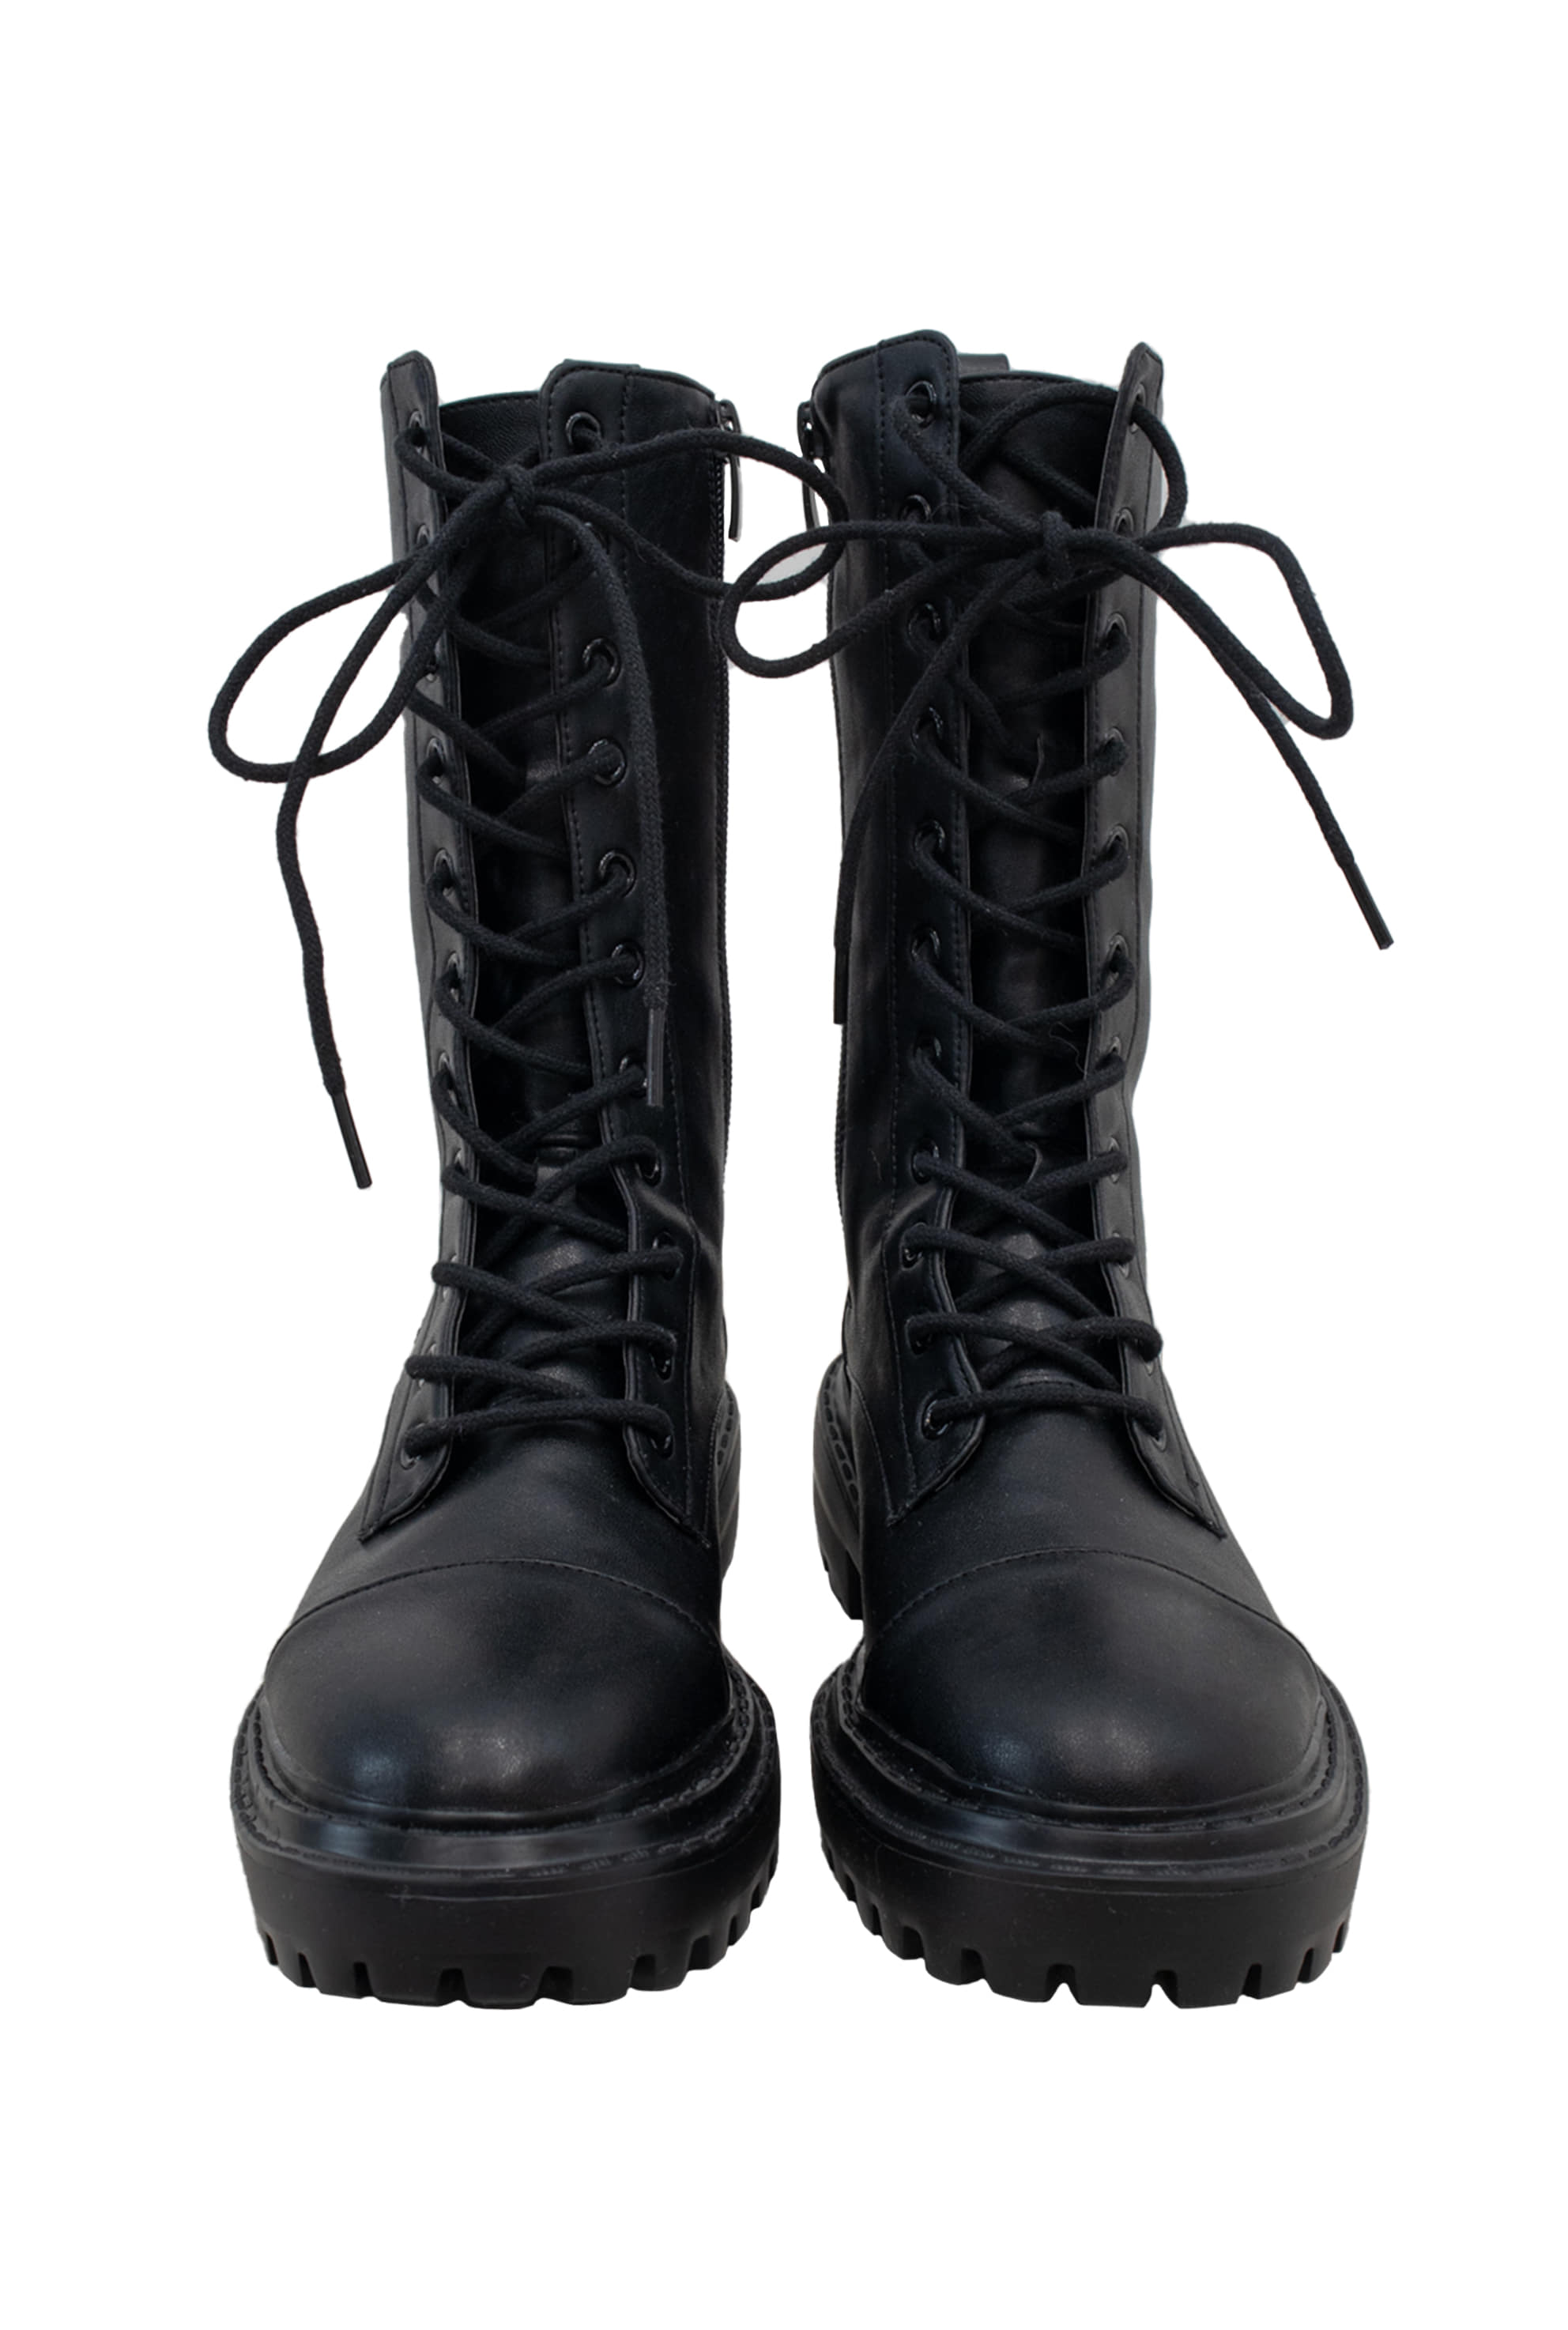 Black combat boots